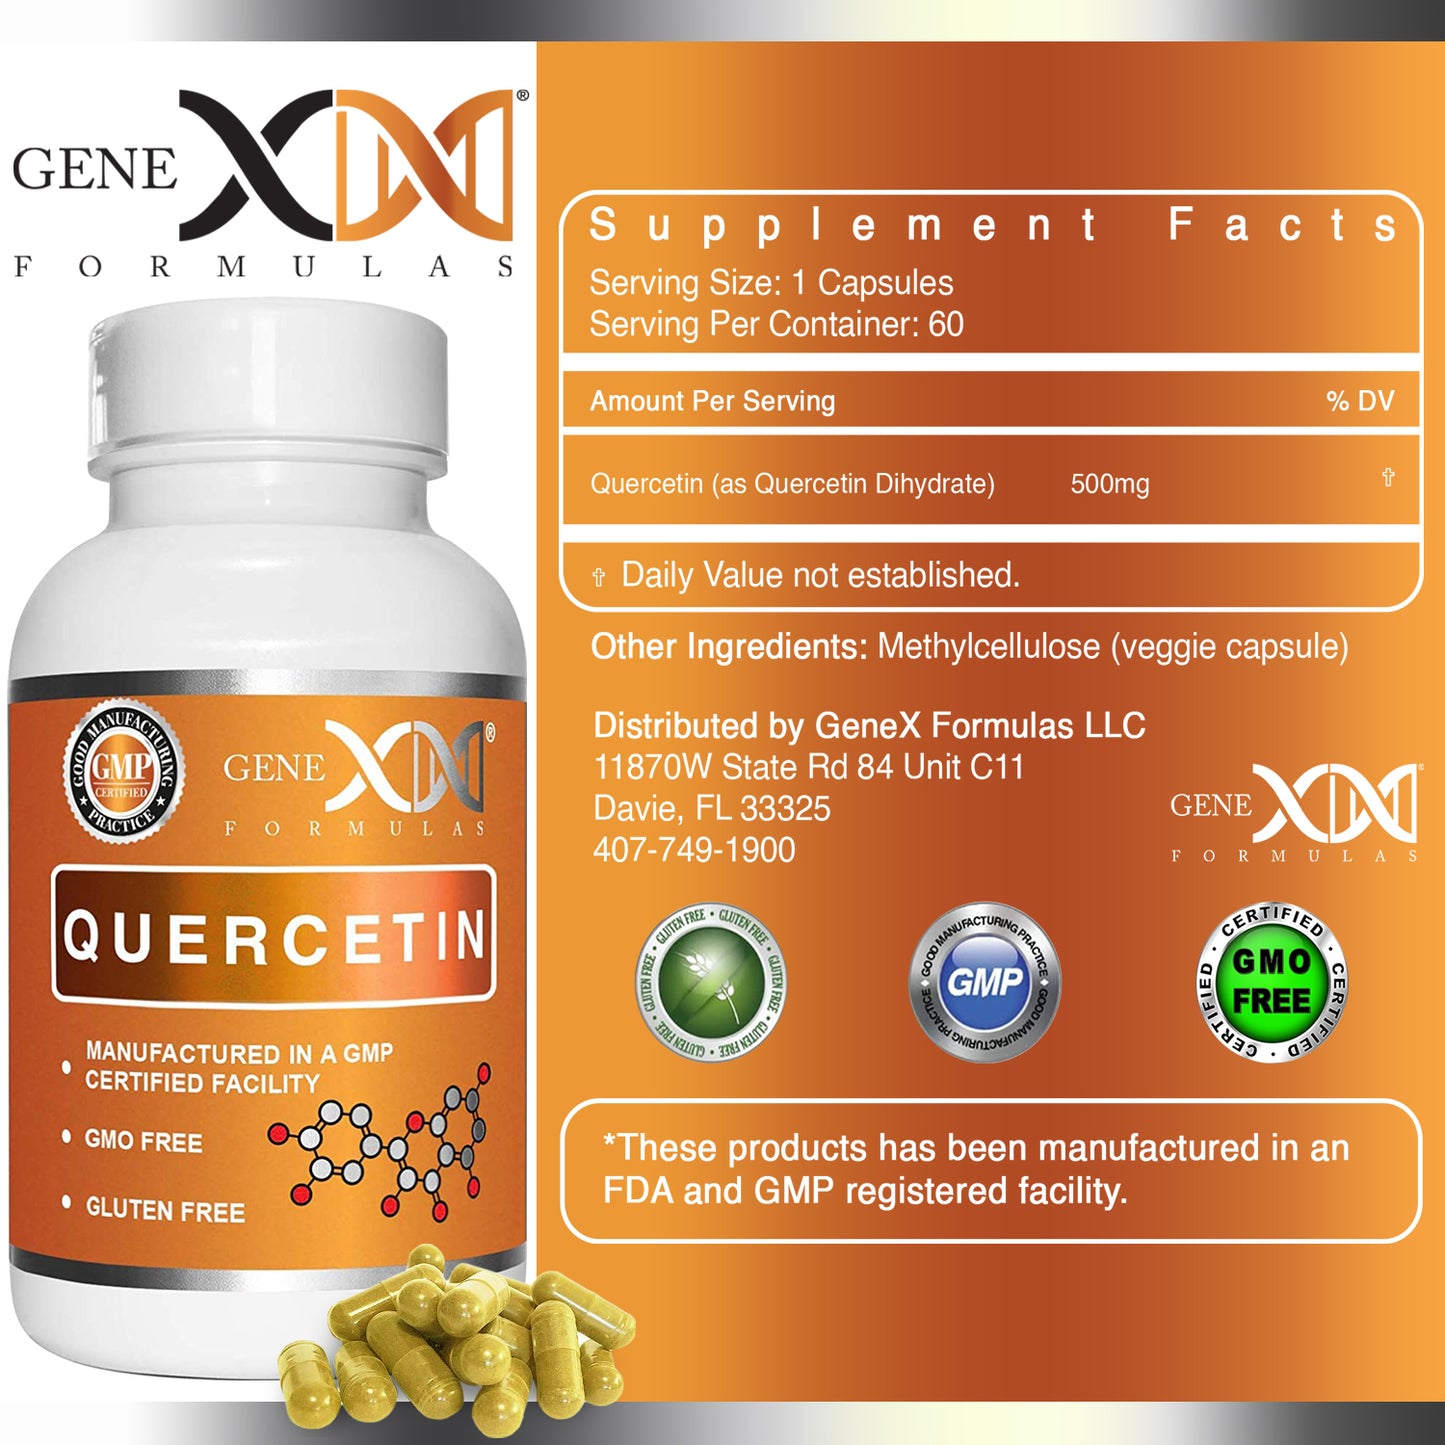 Genex Quercetin 500mg (60 capsules)